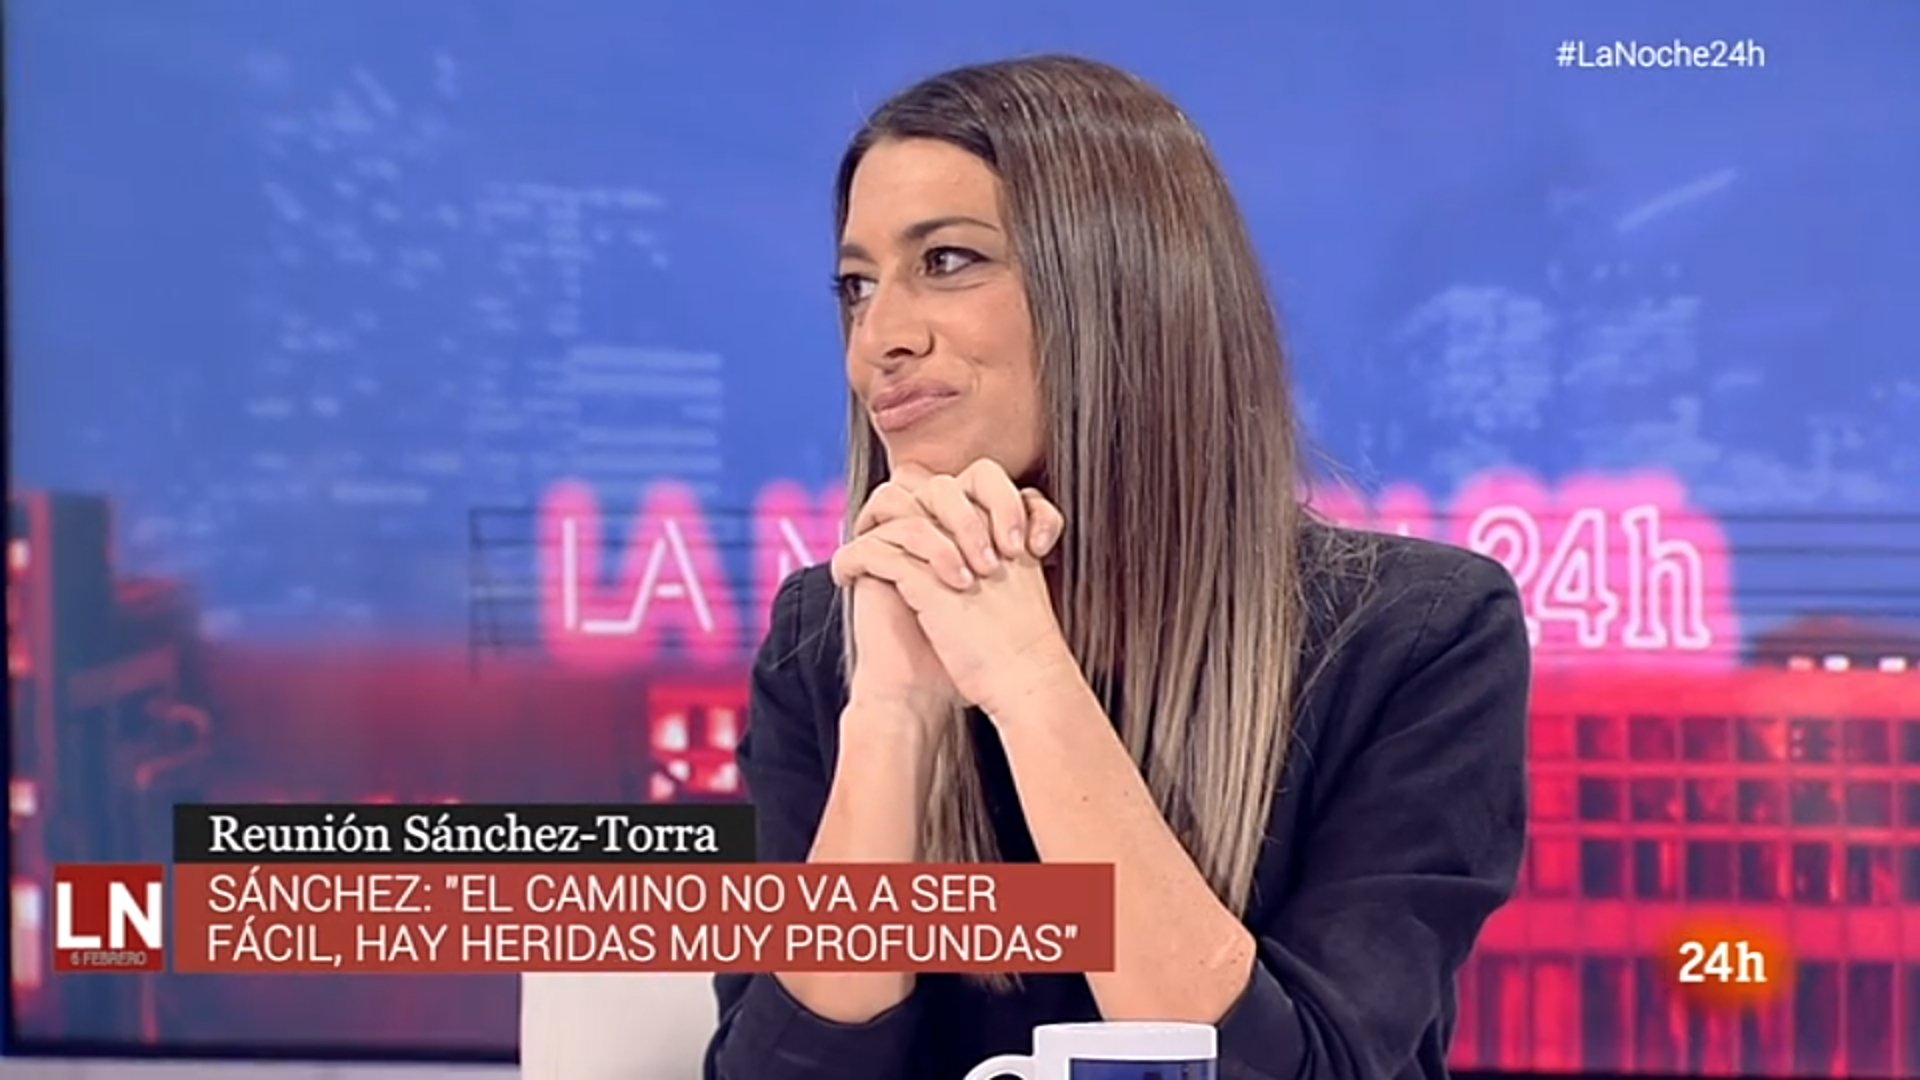 Míriam Nogueras hunde a un ultra maleducado en TVE: "Balas y urnas"